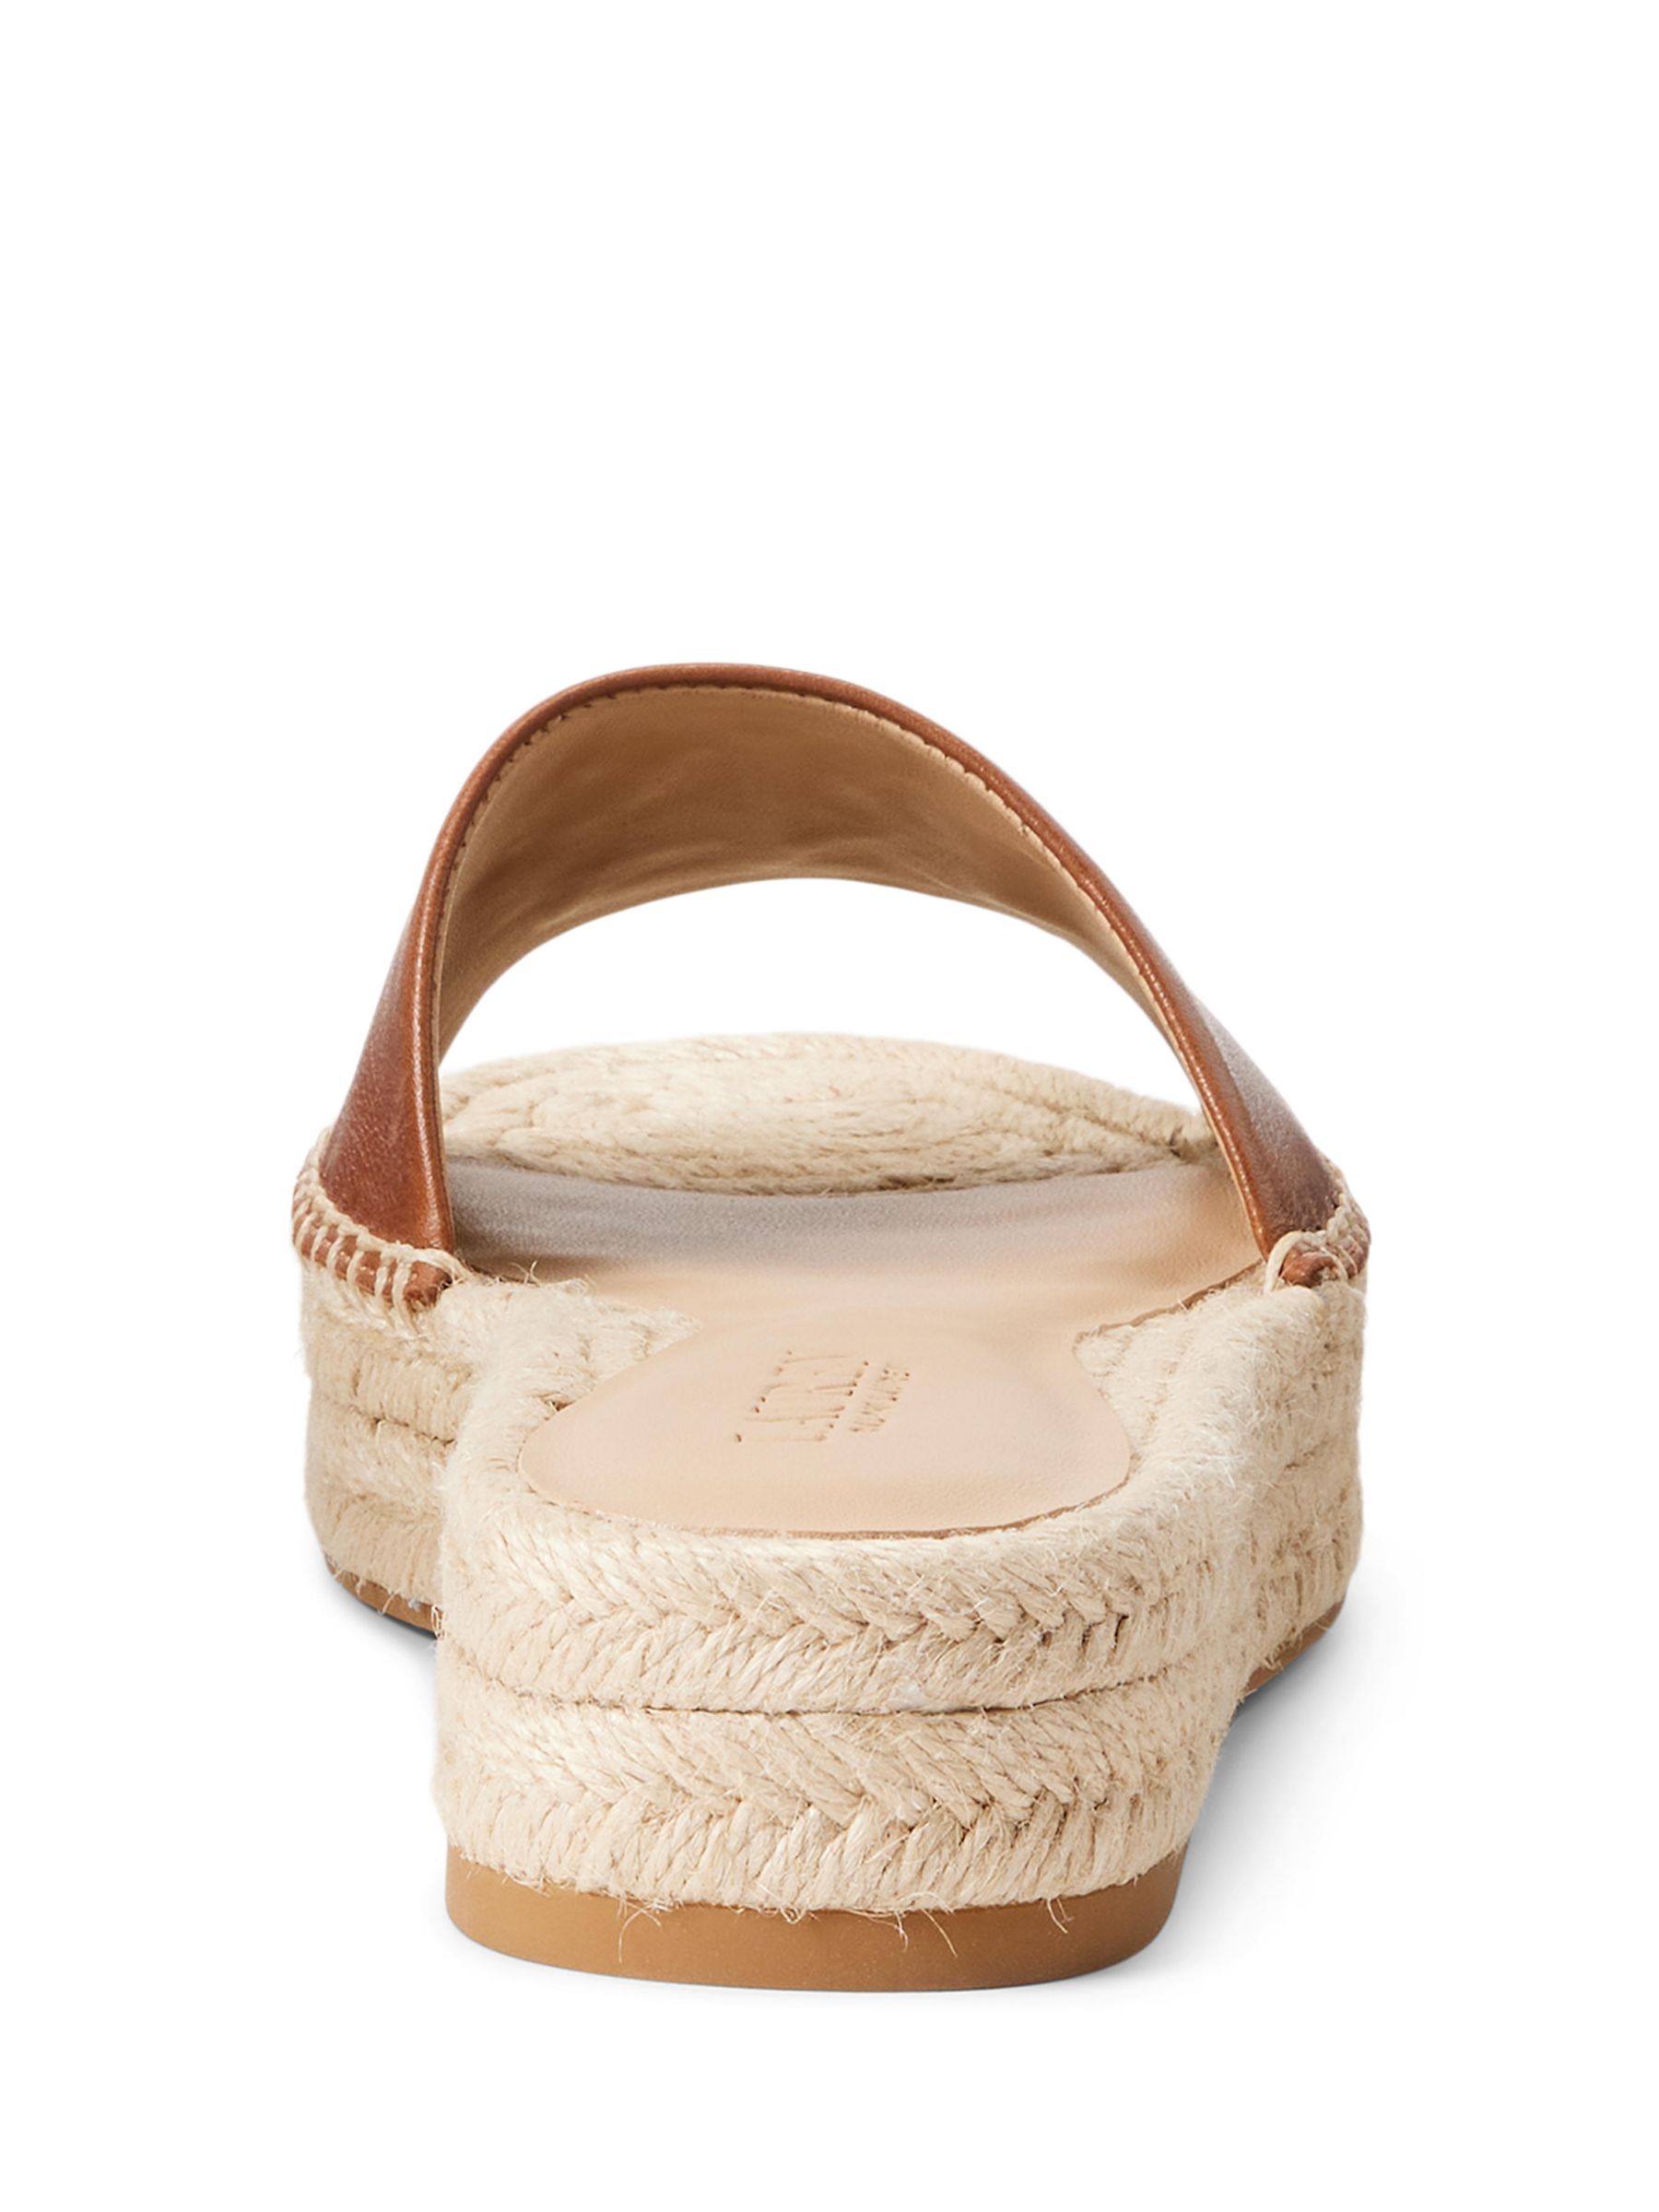 Buy Lauren Ralph Lauren Polly Leather Espadrille Sandals, Tan Online at johnlewis.com